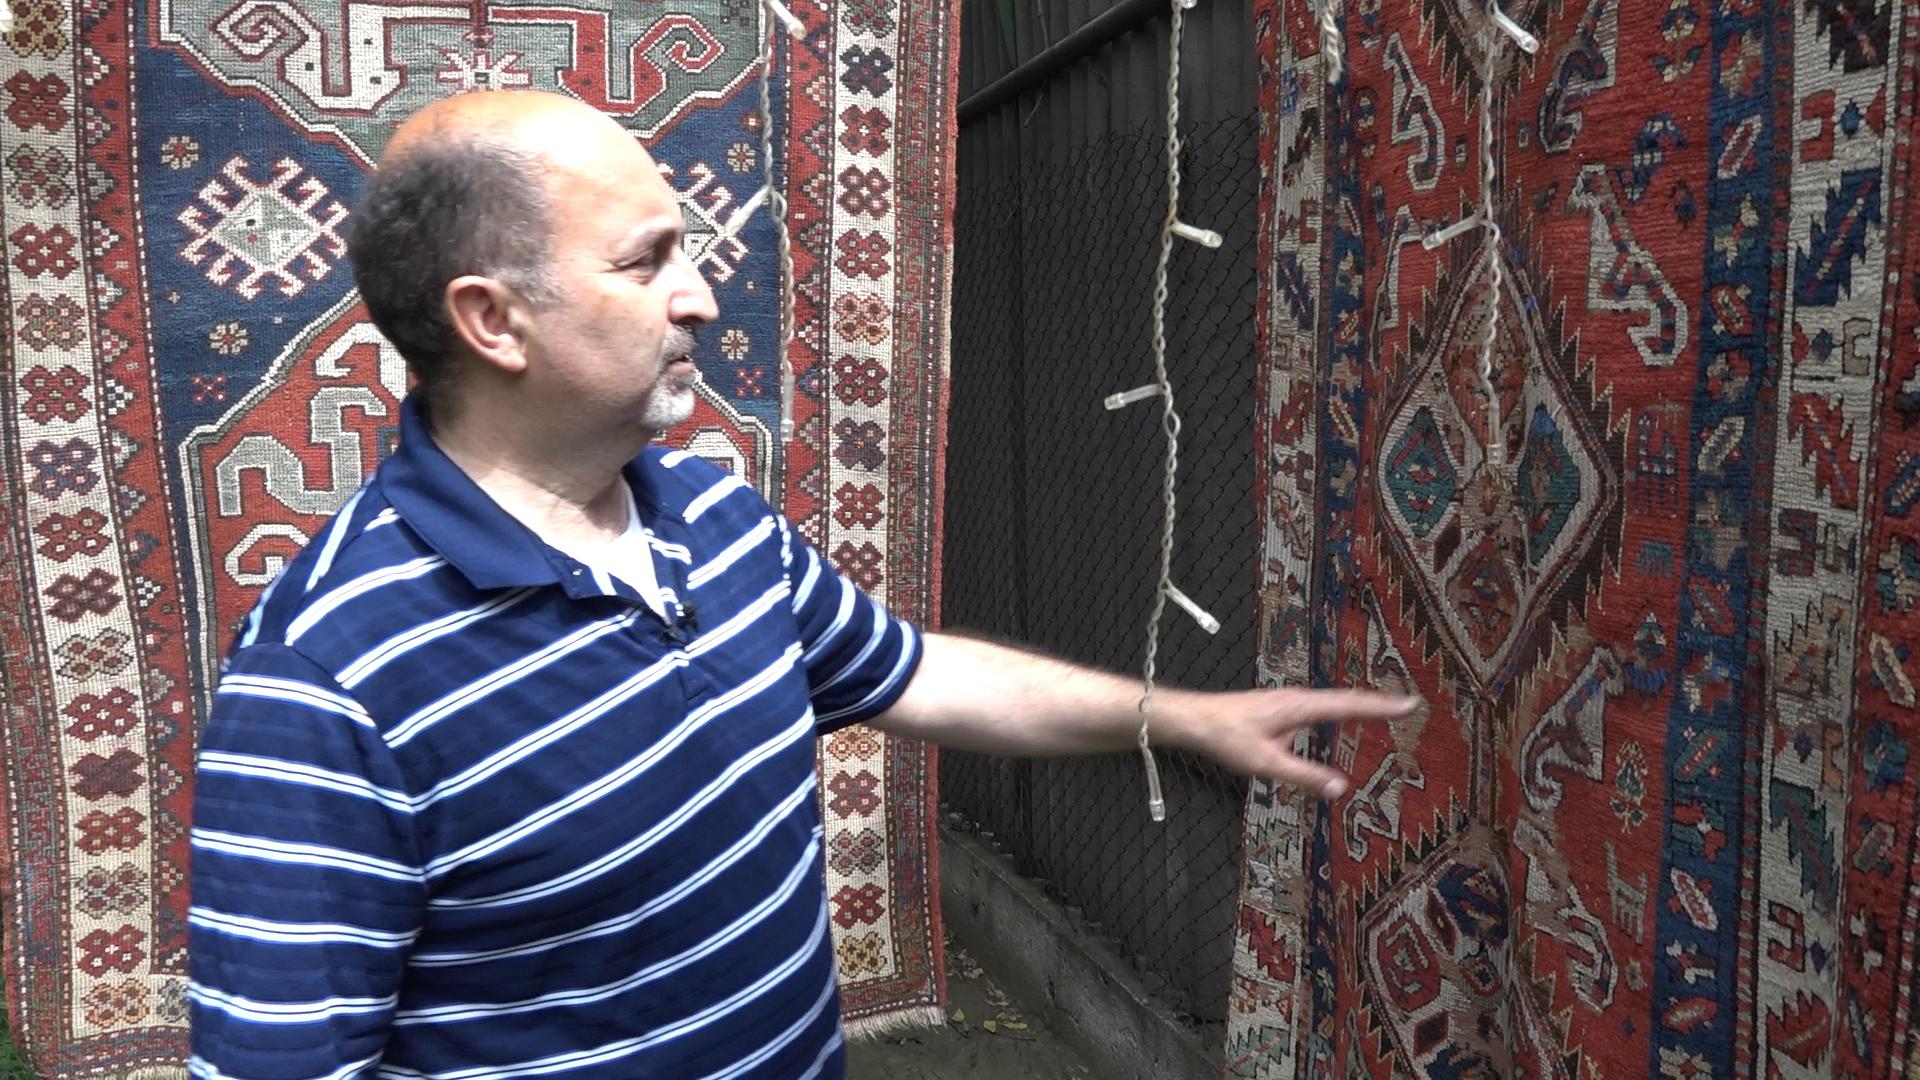 Հայկական գորգերը վերադառնում են Հայաստան, որ կրկին ճամփորդեն/The Revival of Armenian Rugs and Carpets